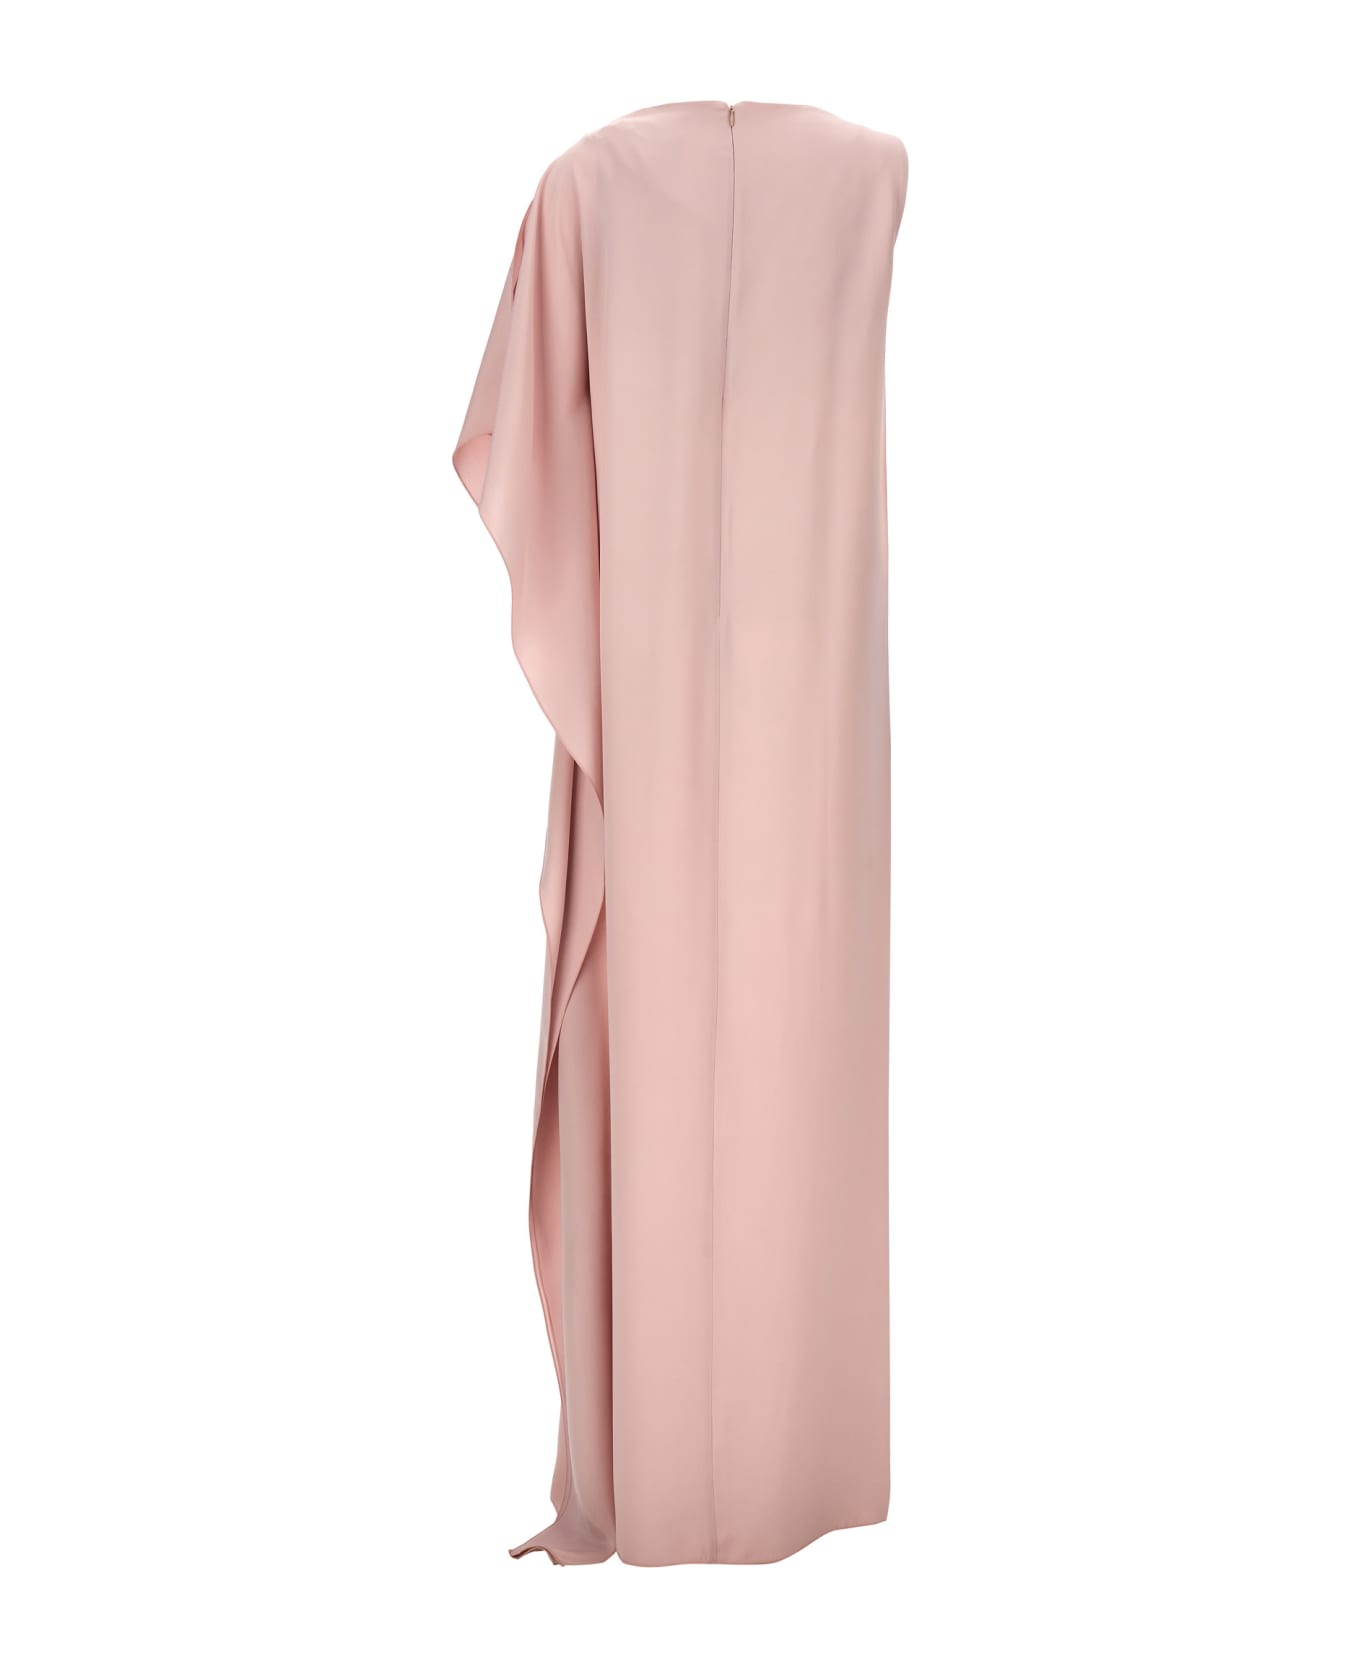 Max Mara 'bora' Dress - Pink